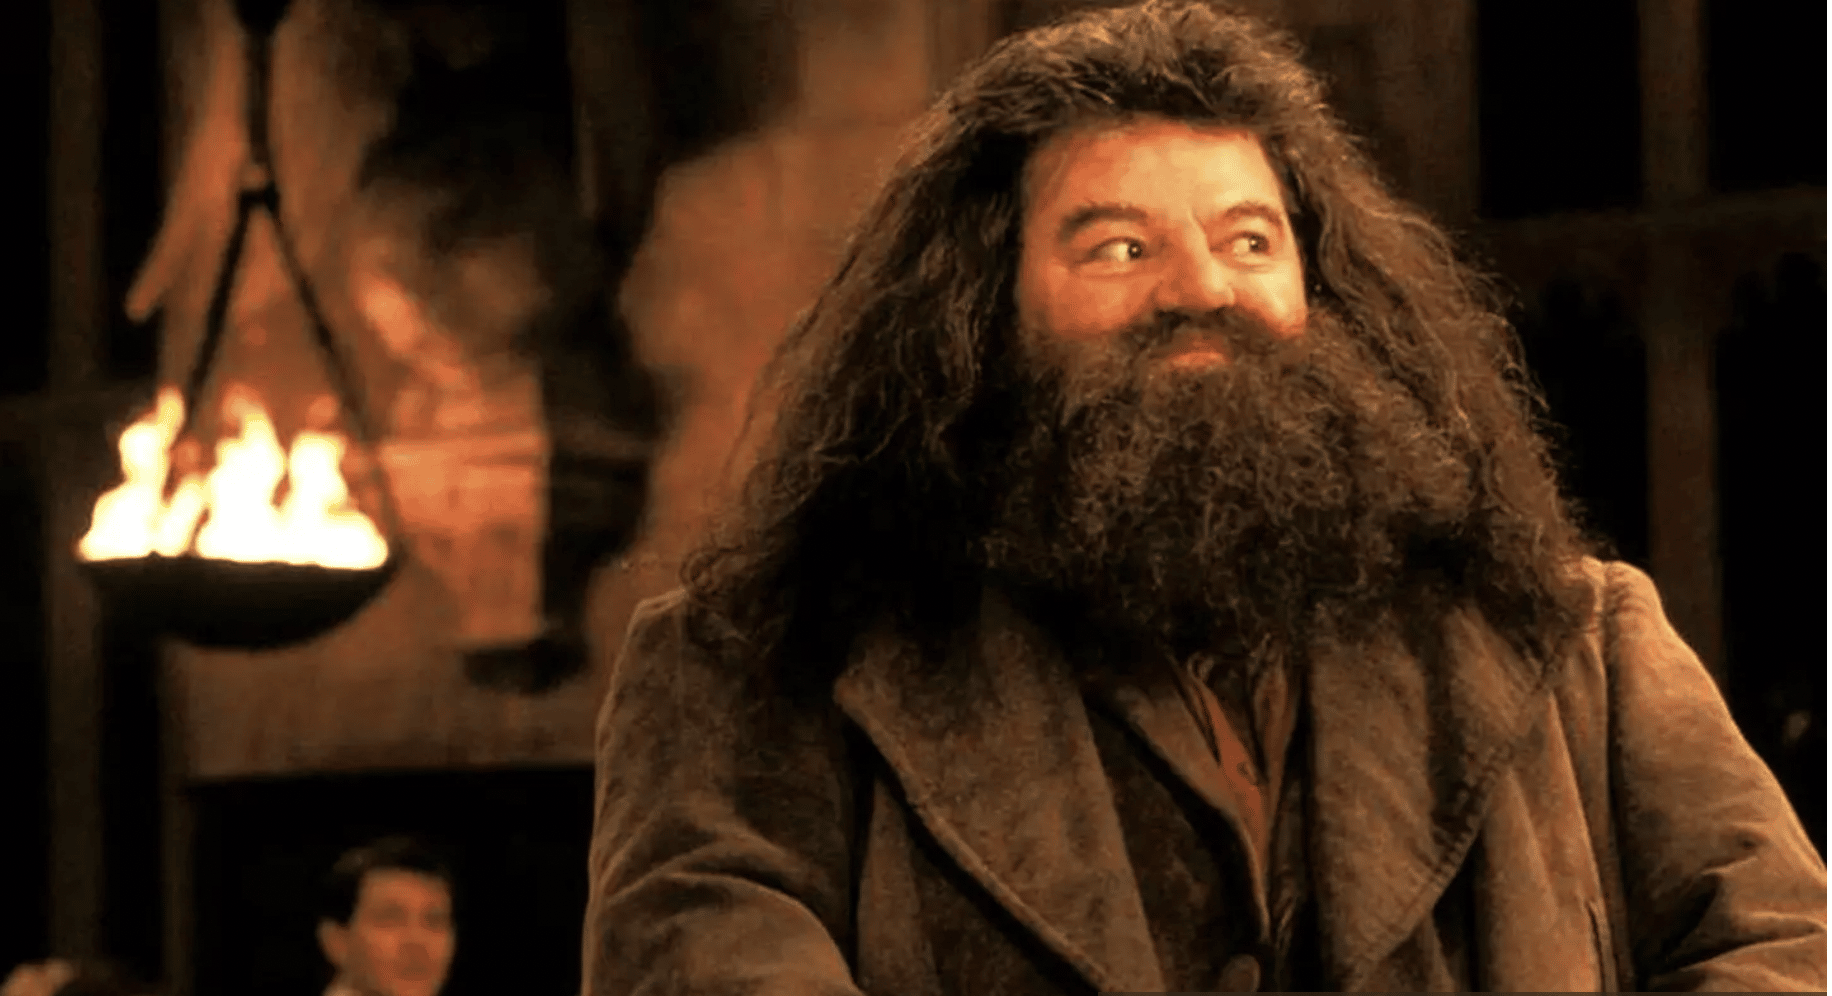 El actor Robbie Coltrane quien le dio vida a Hagrid en Harry Potter, murió a los 72 años de edad